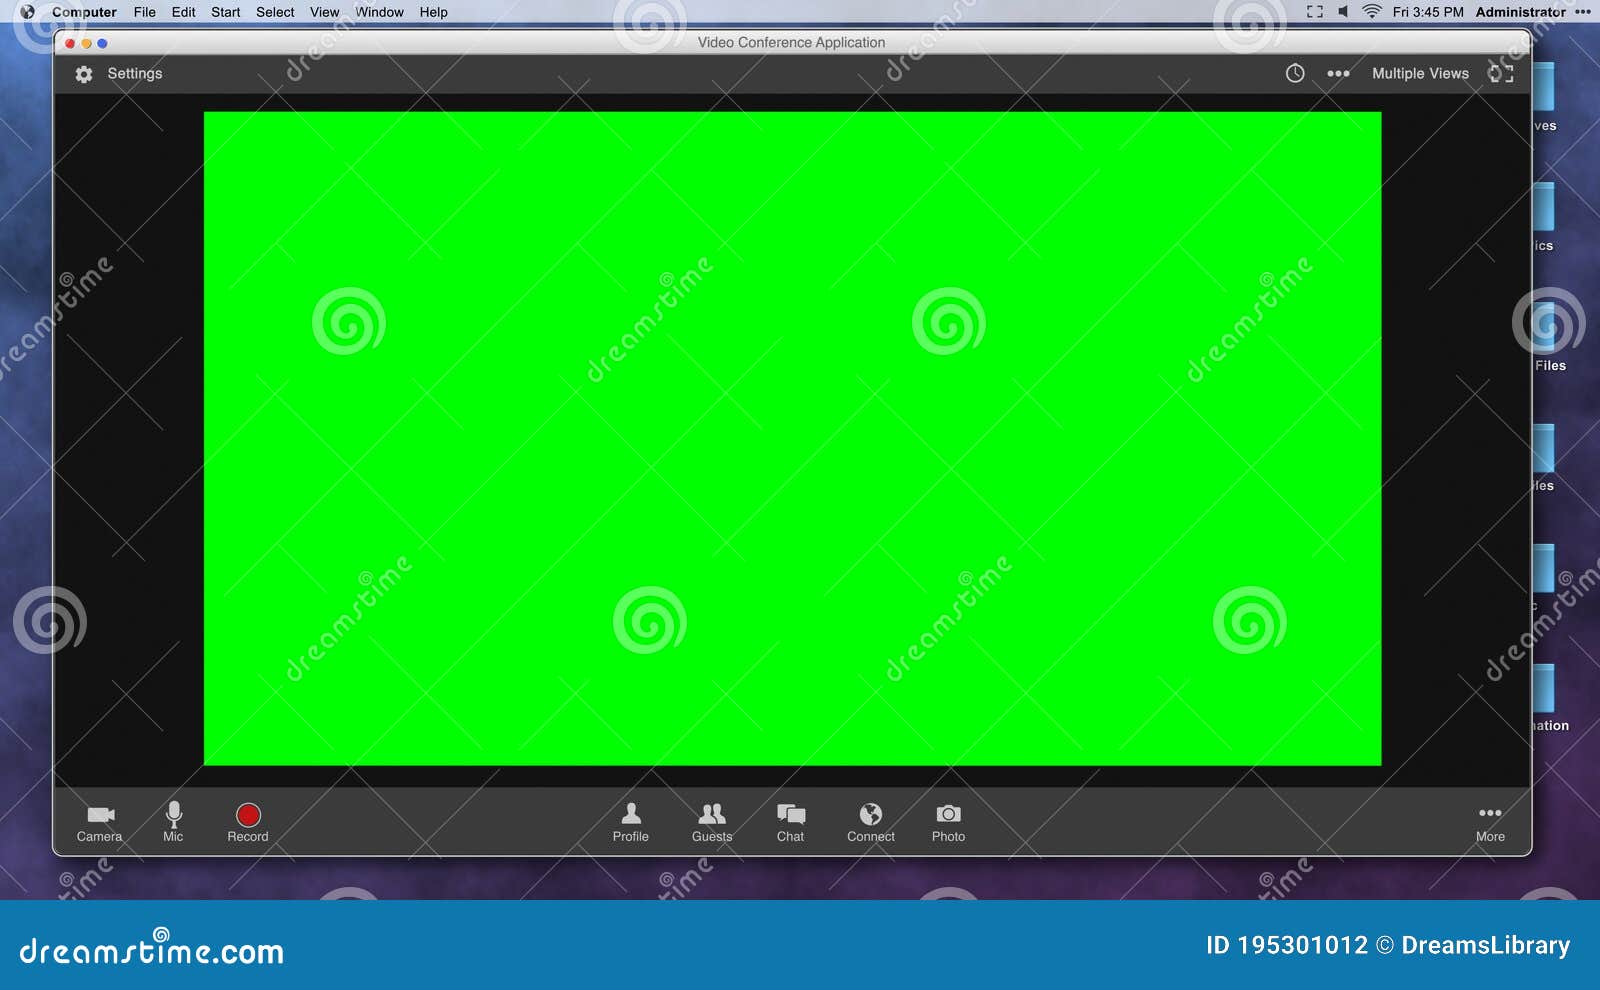 Video nền màn hình xanh lá cây giúp cho việc chỉnh sửa các hình ảnh, video trở nên dễ dàng hơn bao giờ hết. Hãy cùng tìm hiểu và khám phá những tính năng vô cùng thú vị của video nền màn hình xanh lá cây này!